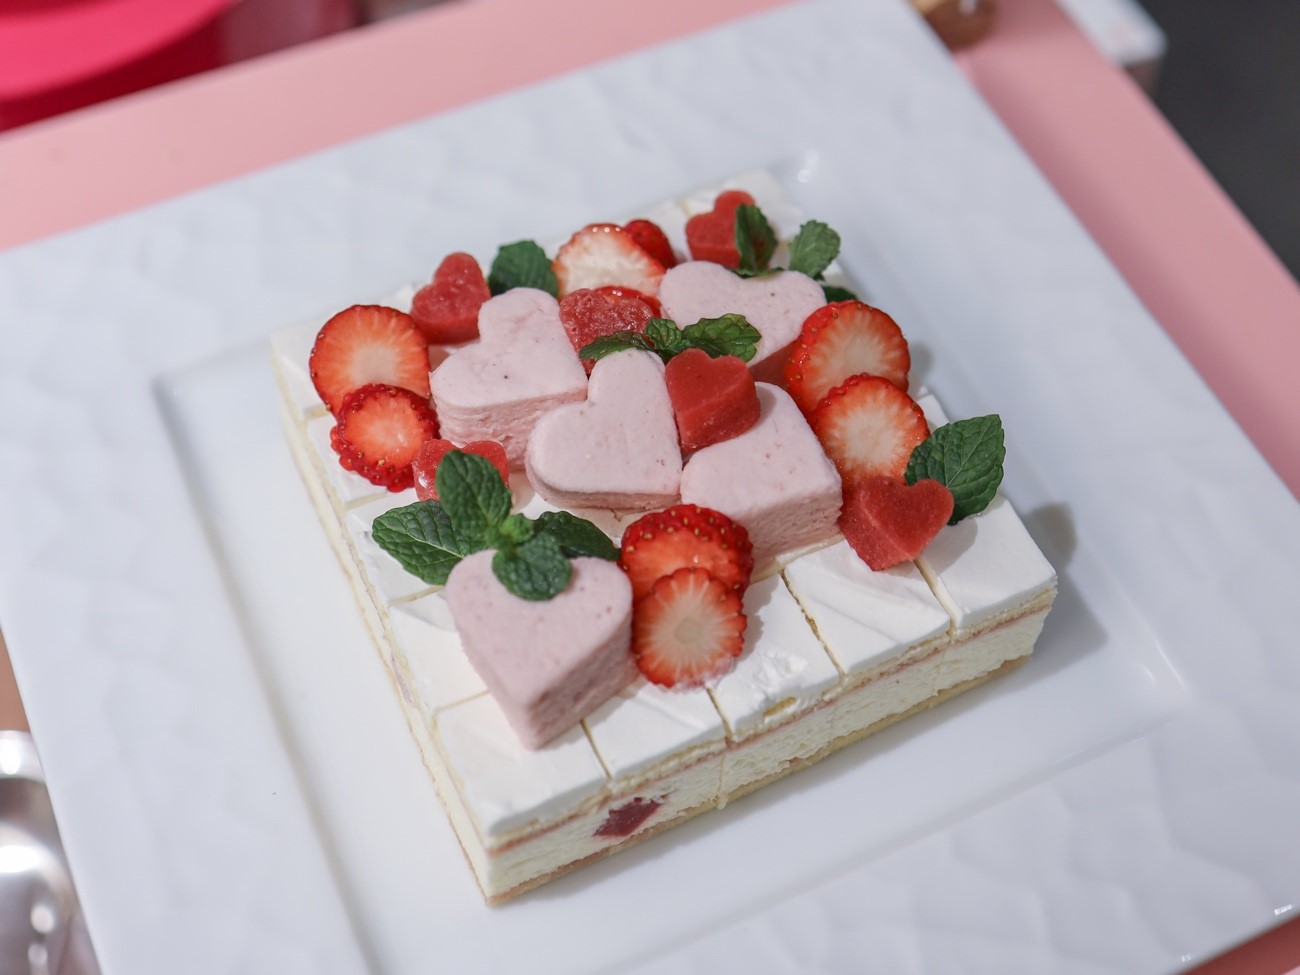 京都タワーホテル,Strawberry Sweets Buffet〜Sweet Heart〜,いちご,ストロベリースイーツビュッフェ